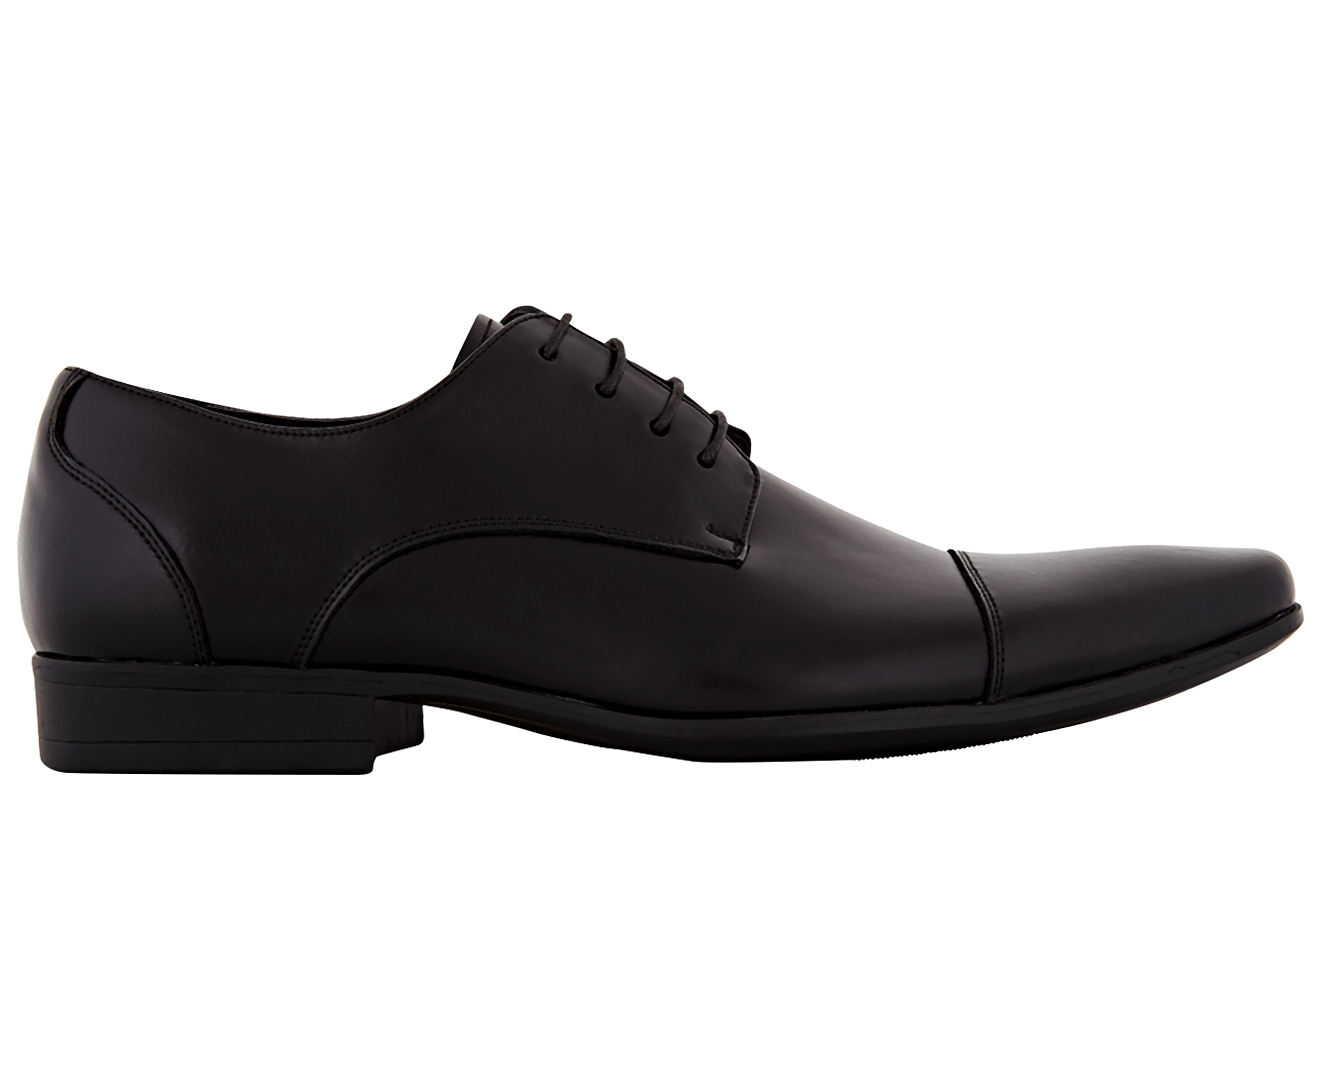 Julius Marlow Men's Leather Carlos Shoes - Black | Catch.com.au